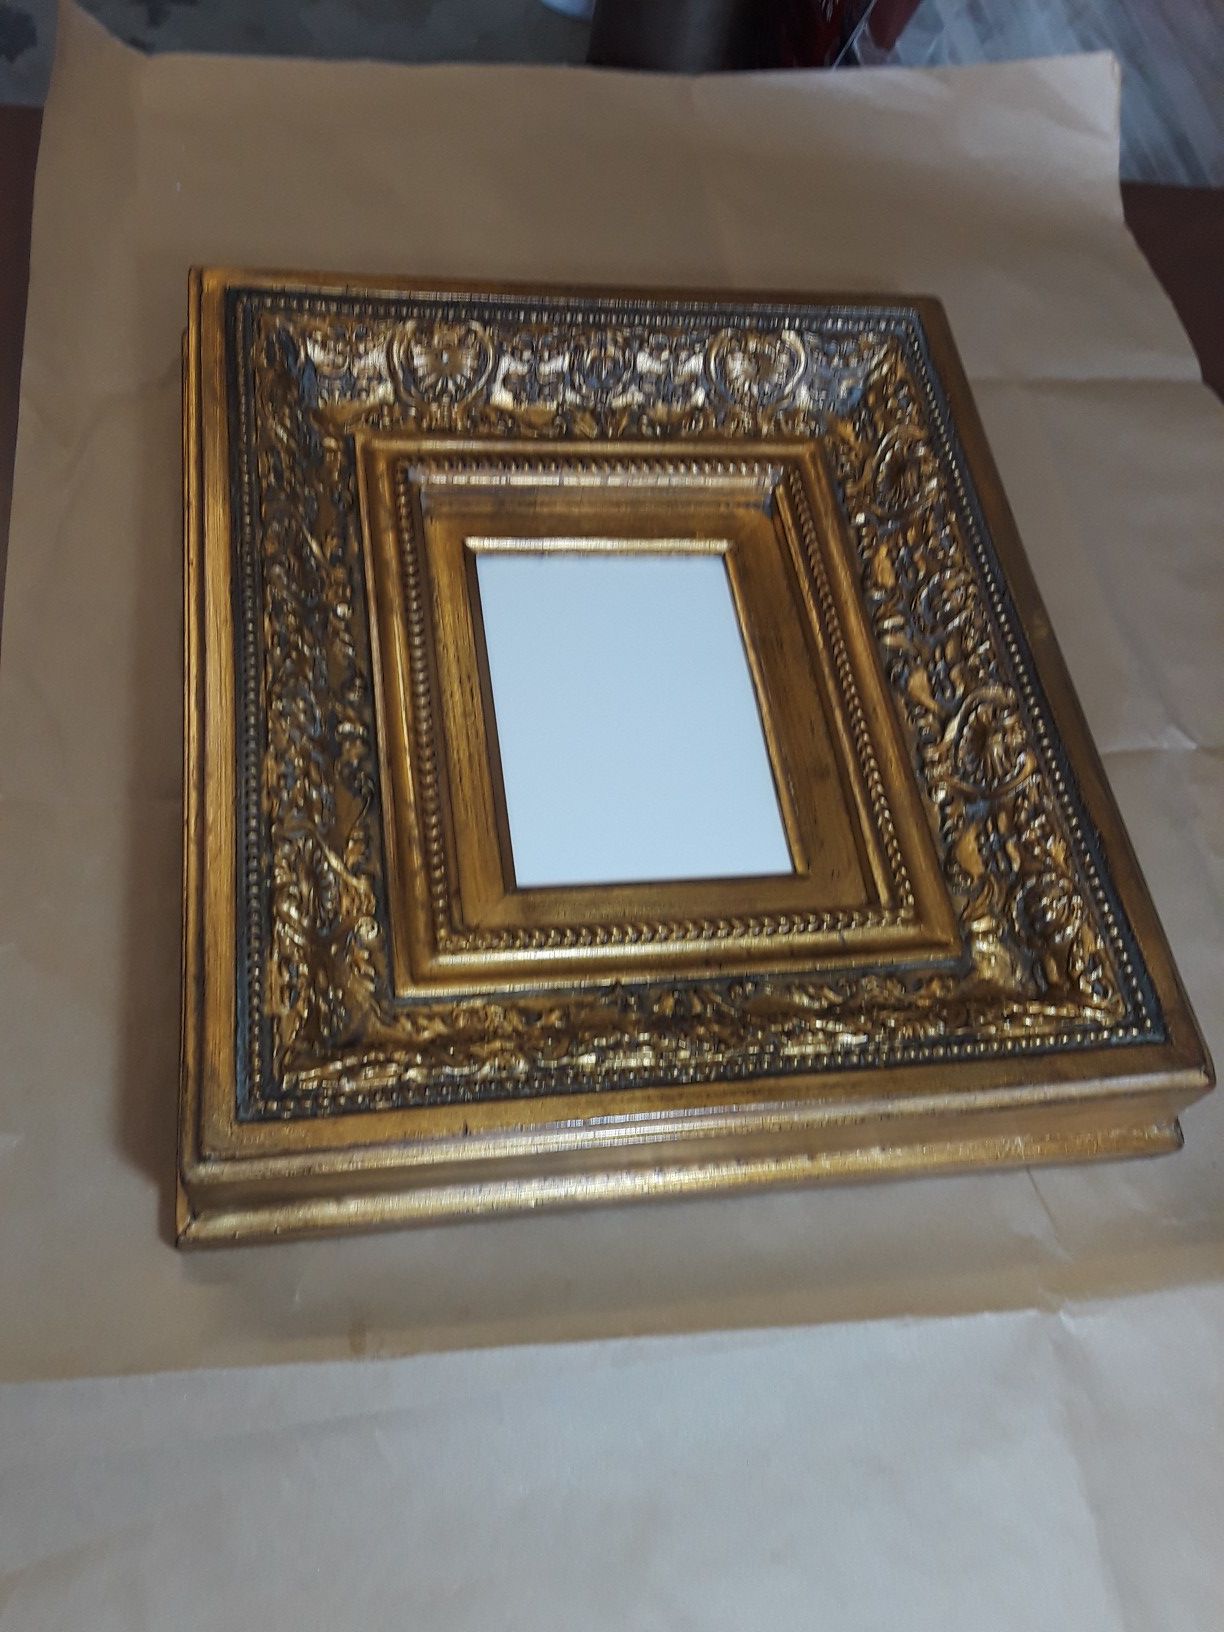 Antique gold frame